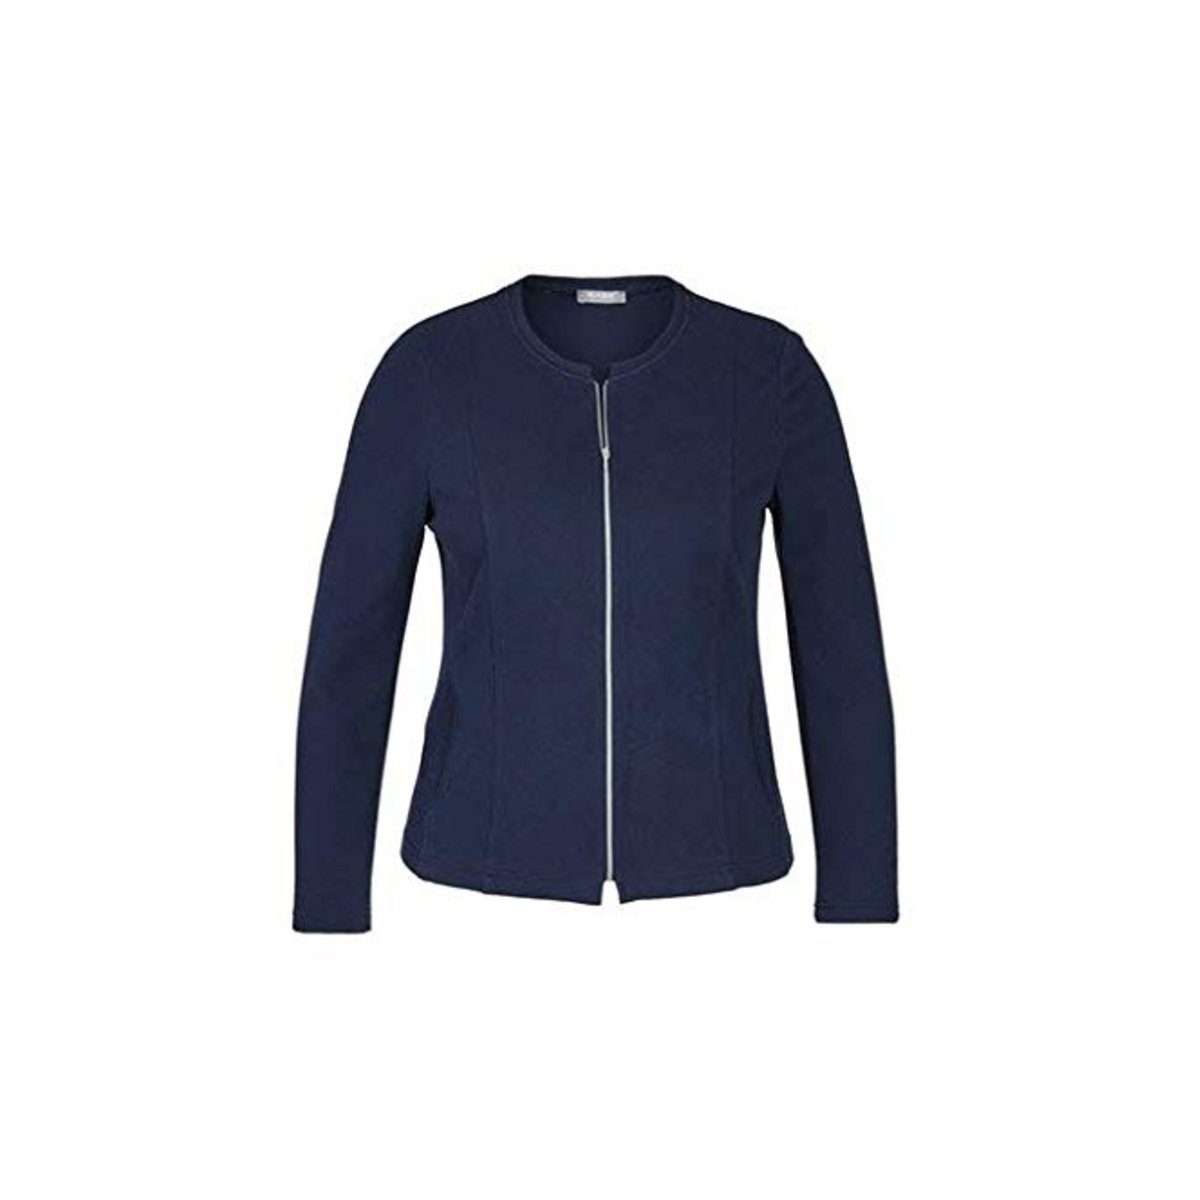 Функциональная куртка 3-в-1 темно-синего цвета (1 шт.)